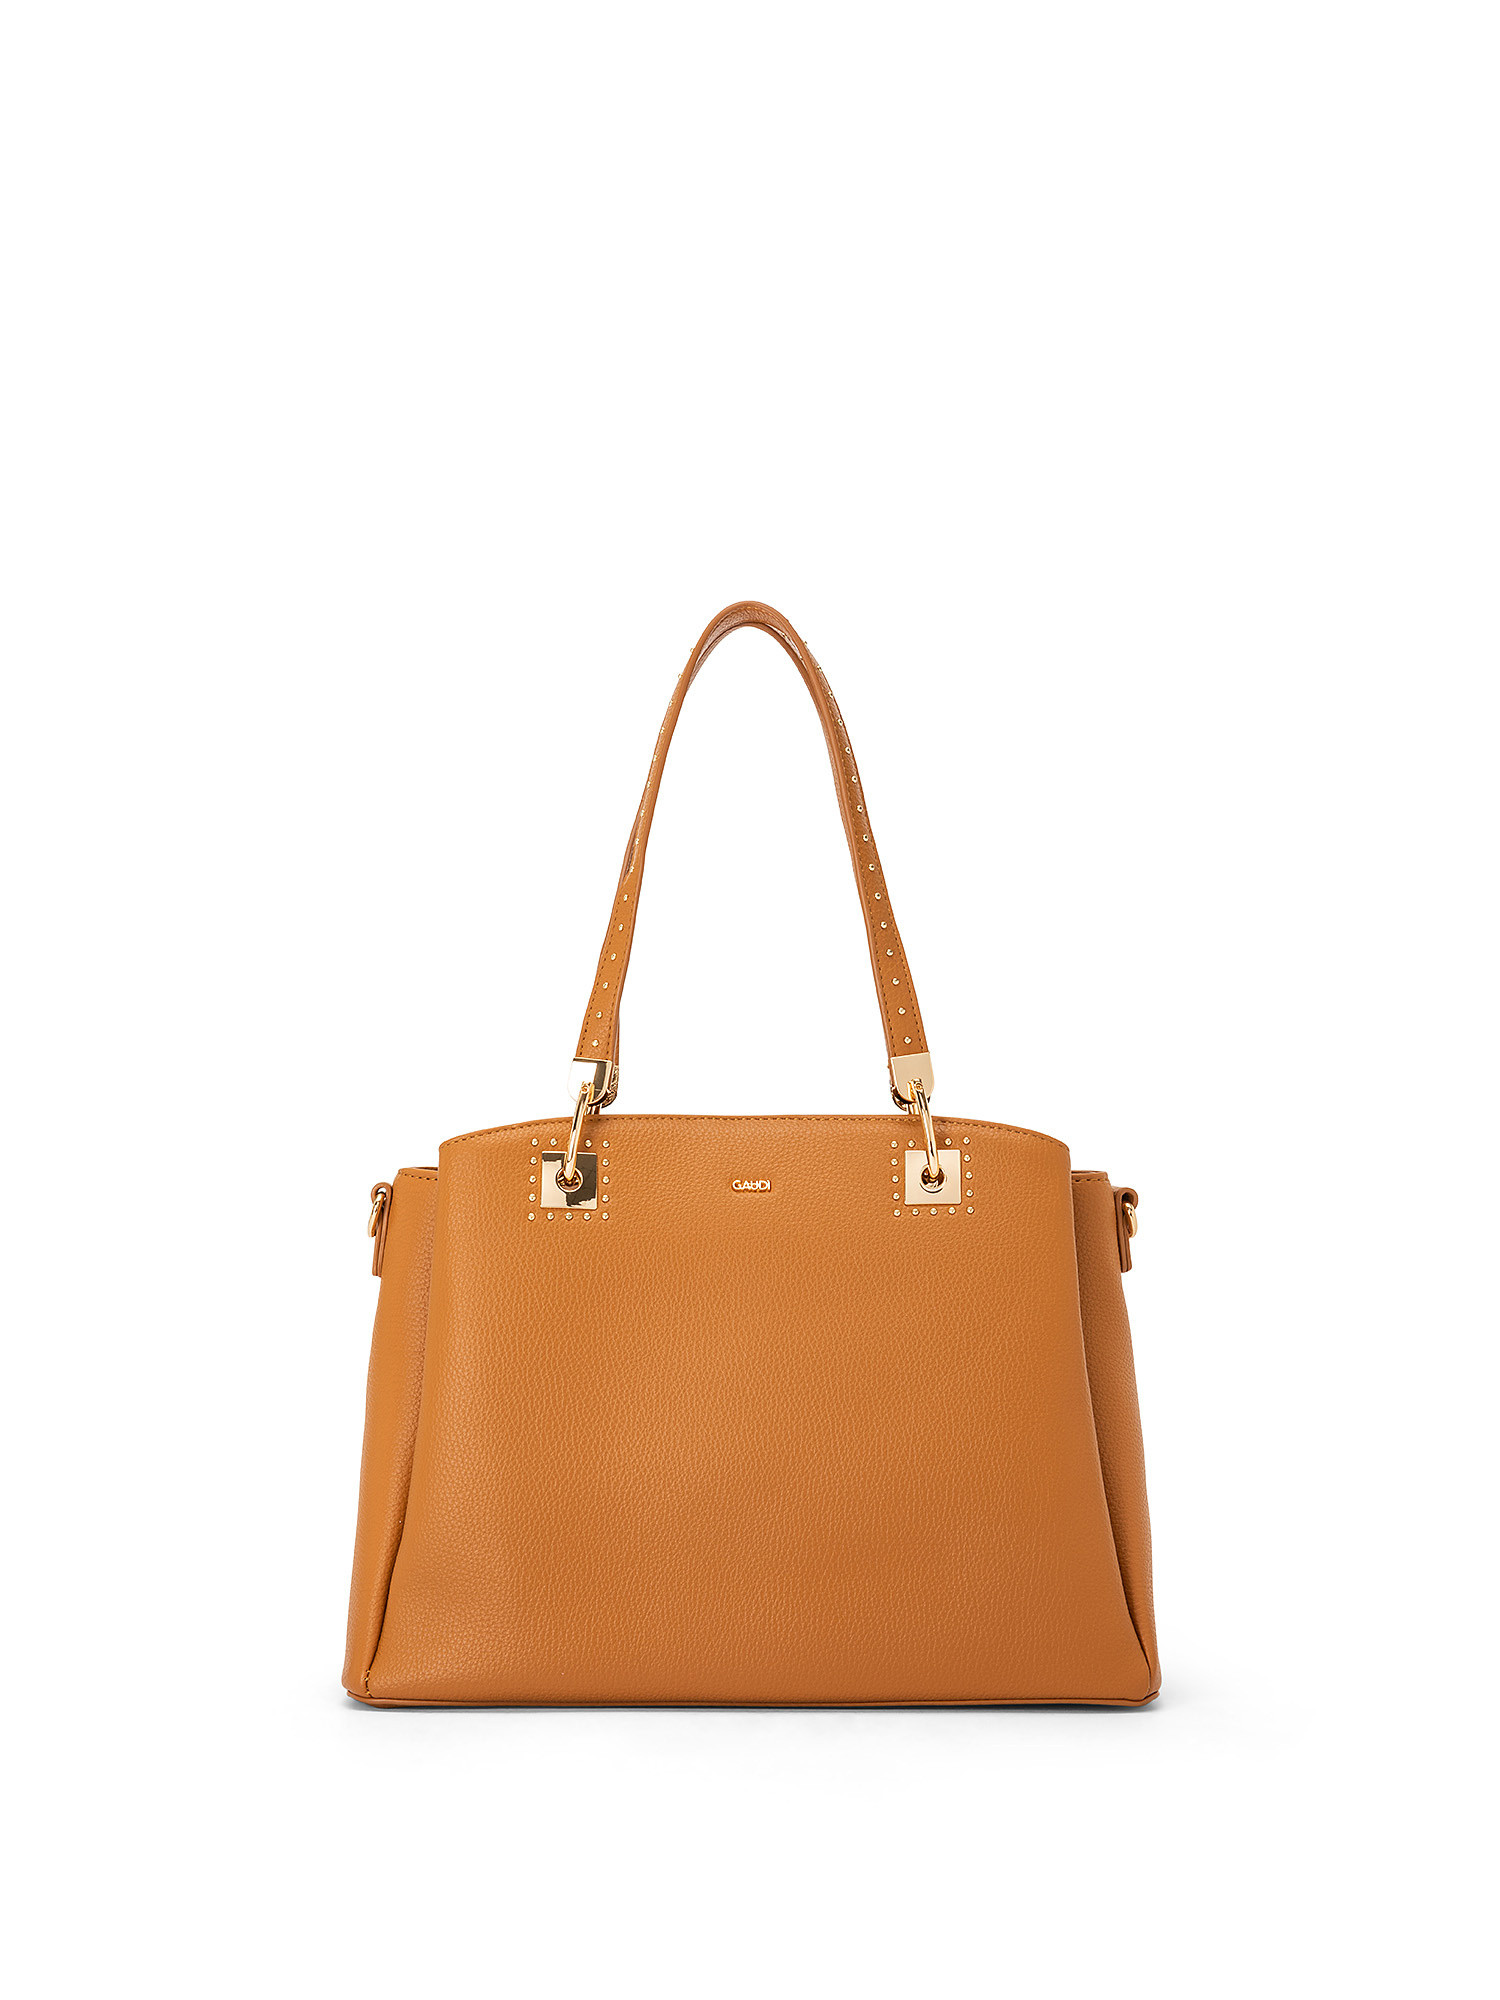 Gaudì - Shopping bag Aurora, Brown, large image number 0